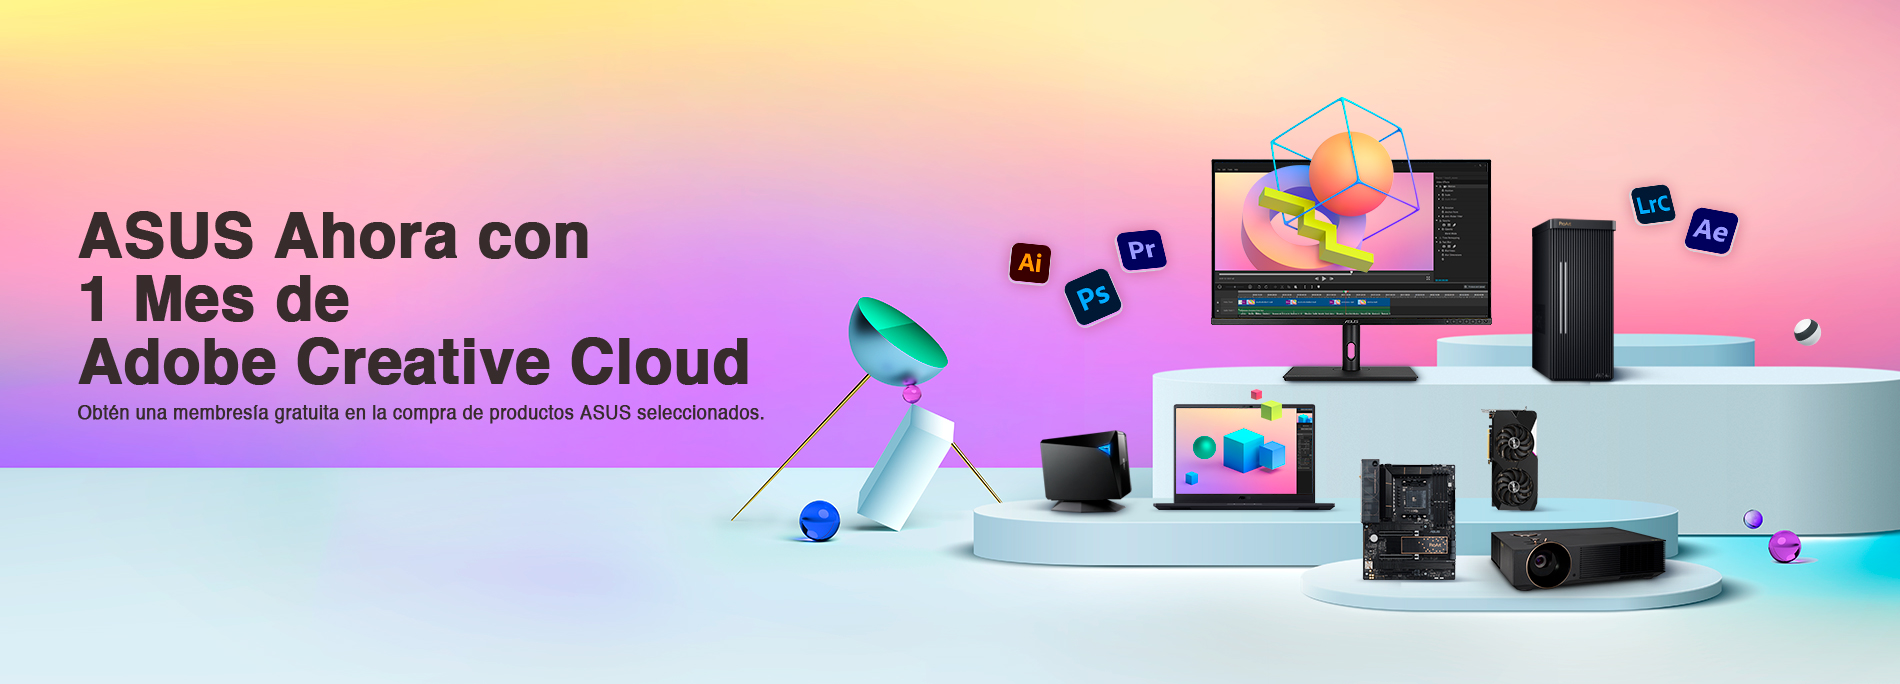 ASUS ahora con 1 mes de Adobe Creative Cloud 